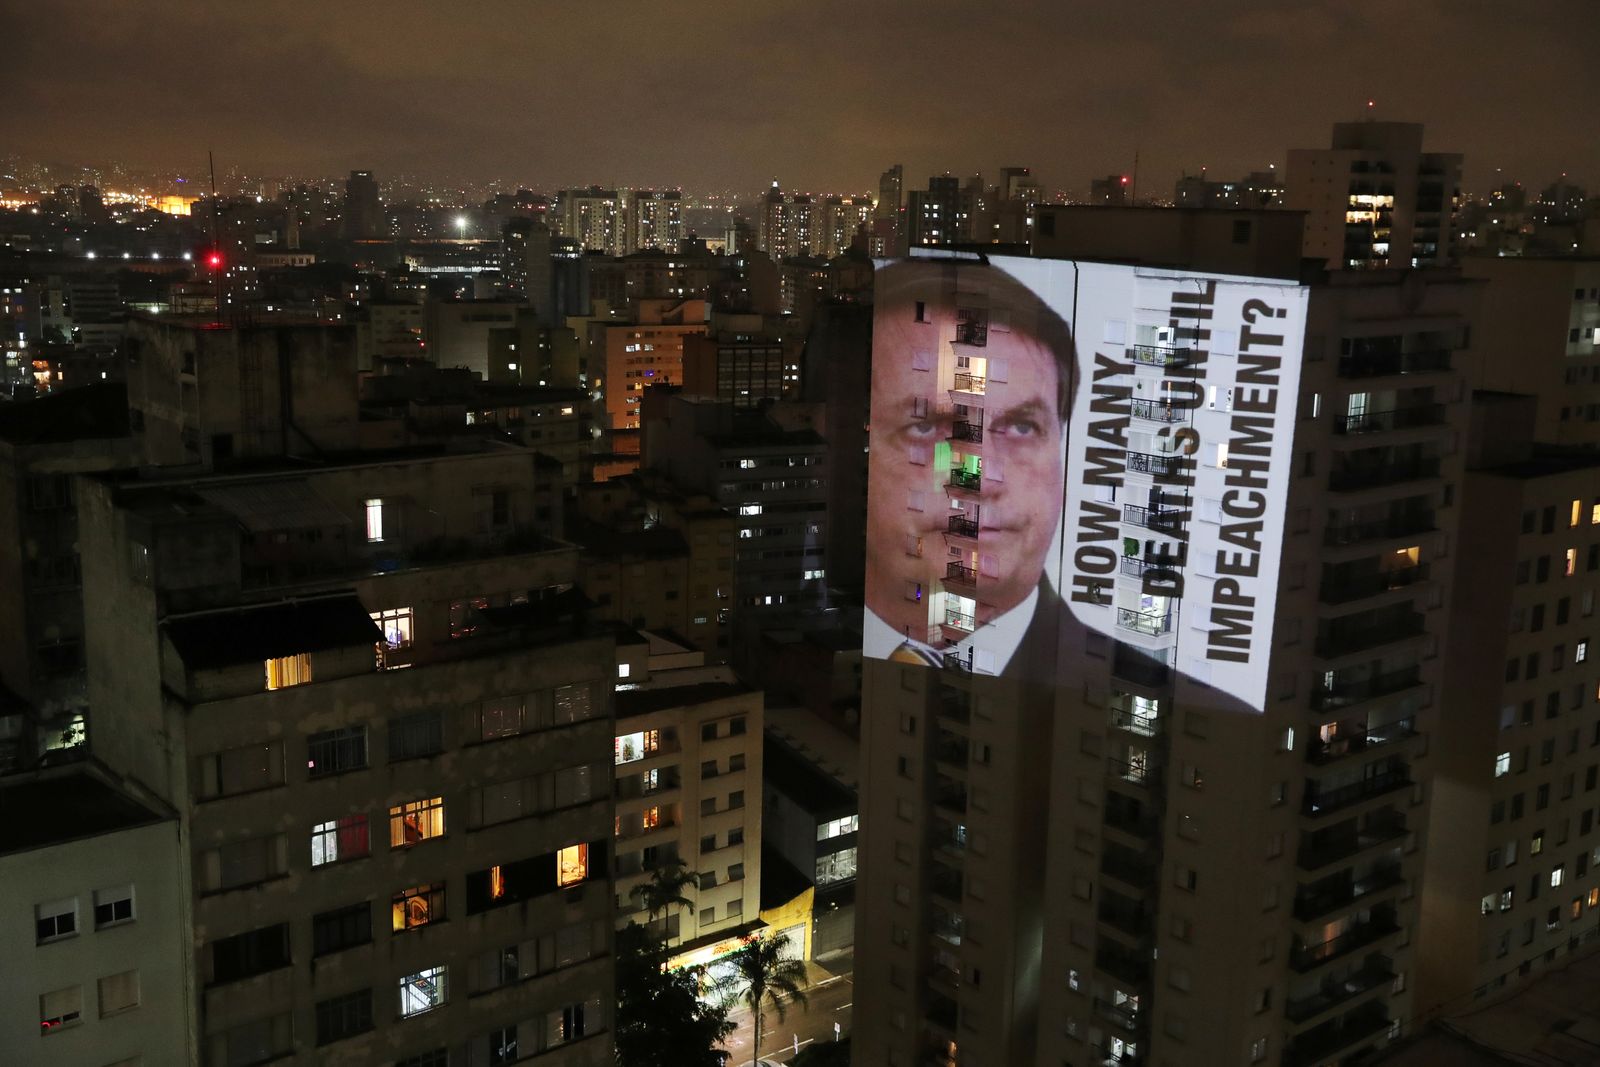 صورة للرئيس البرازيلي جايير بولسونارو مع عبارة 